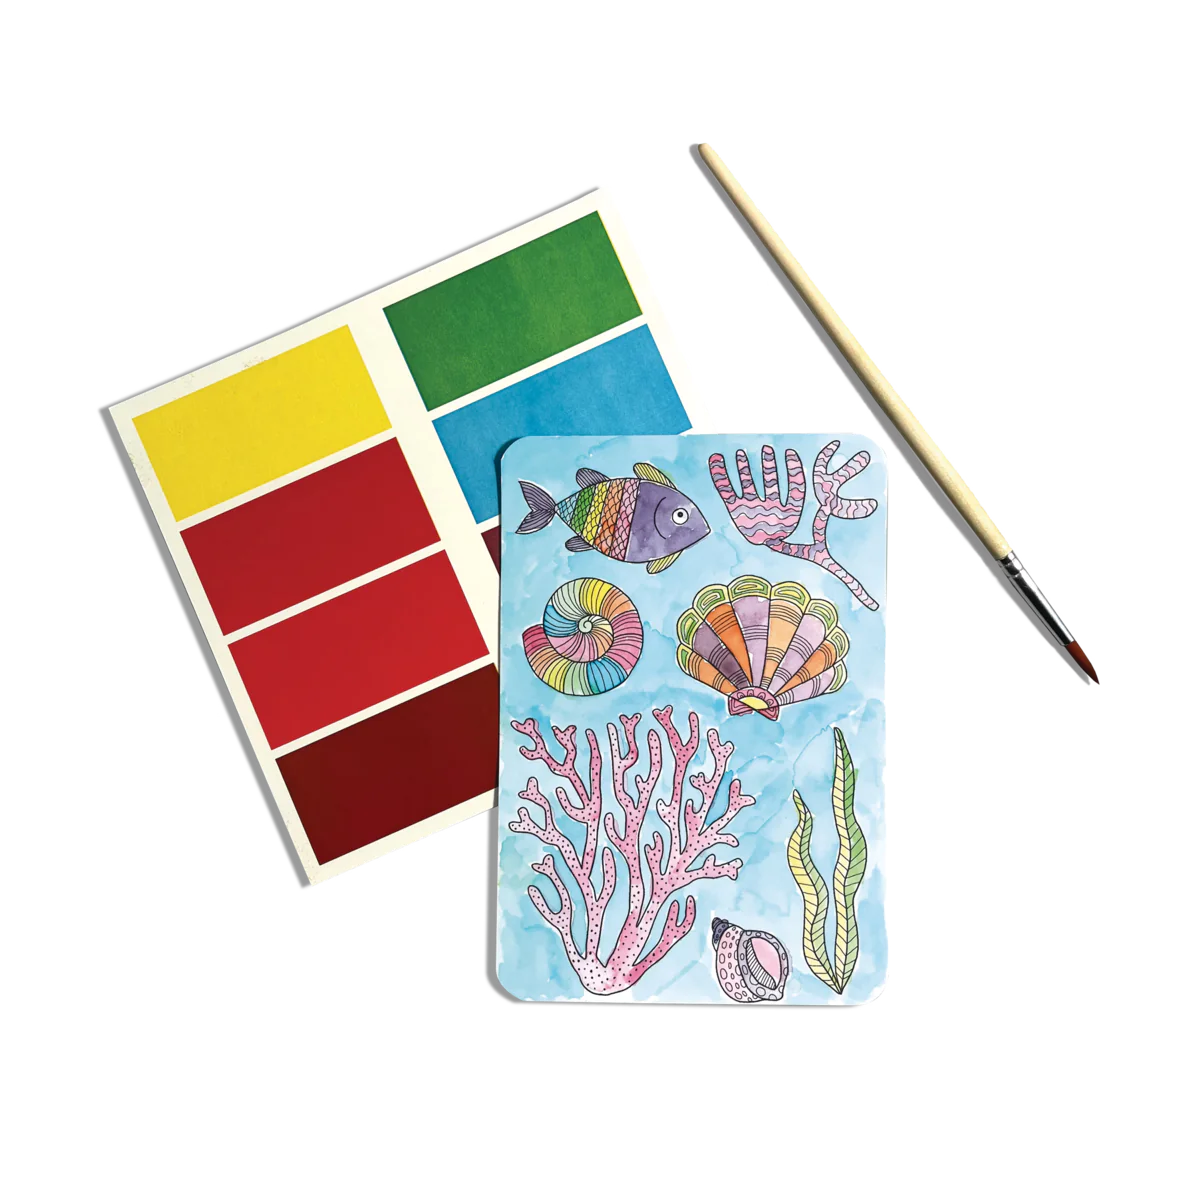 Scenic Hues DIY Watercolor Art Kit